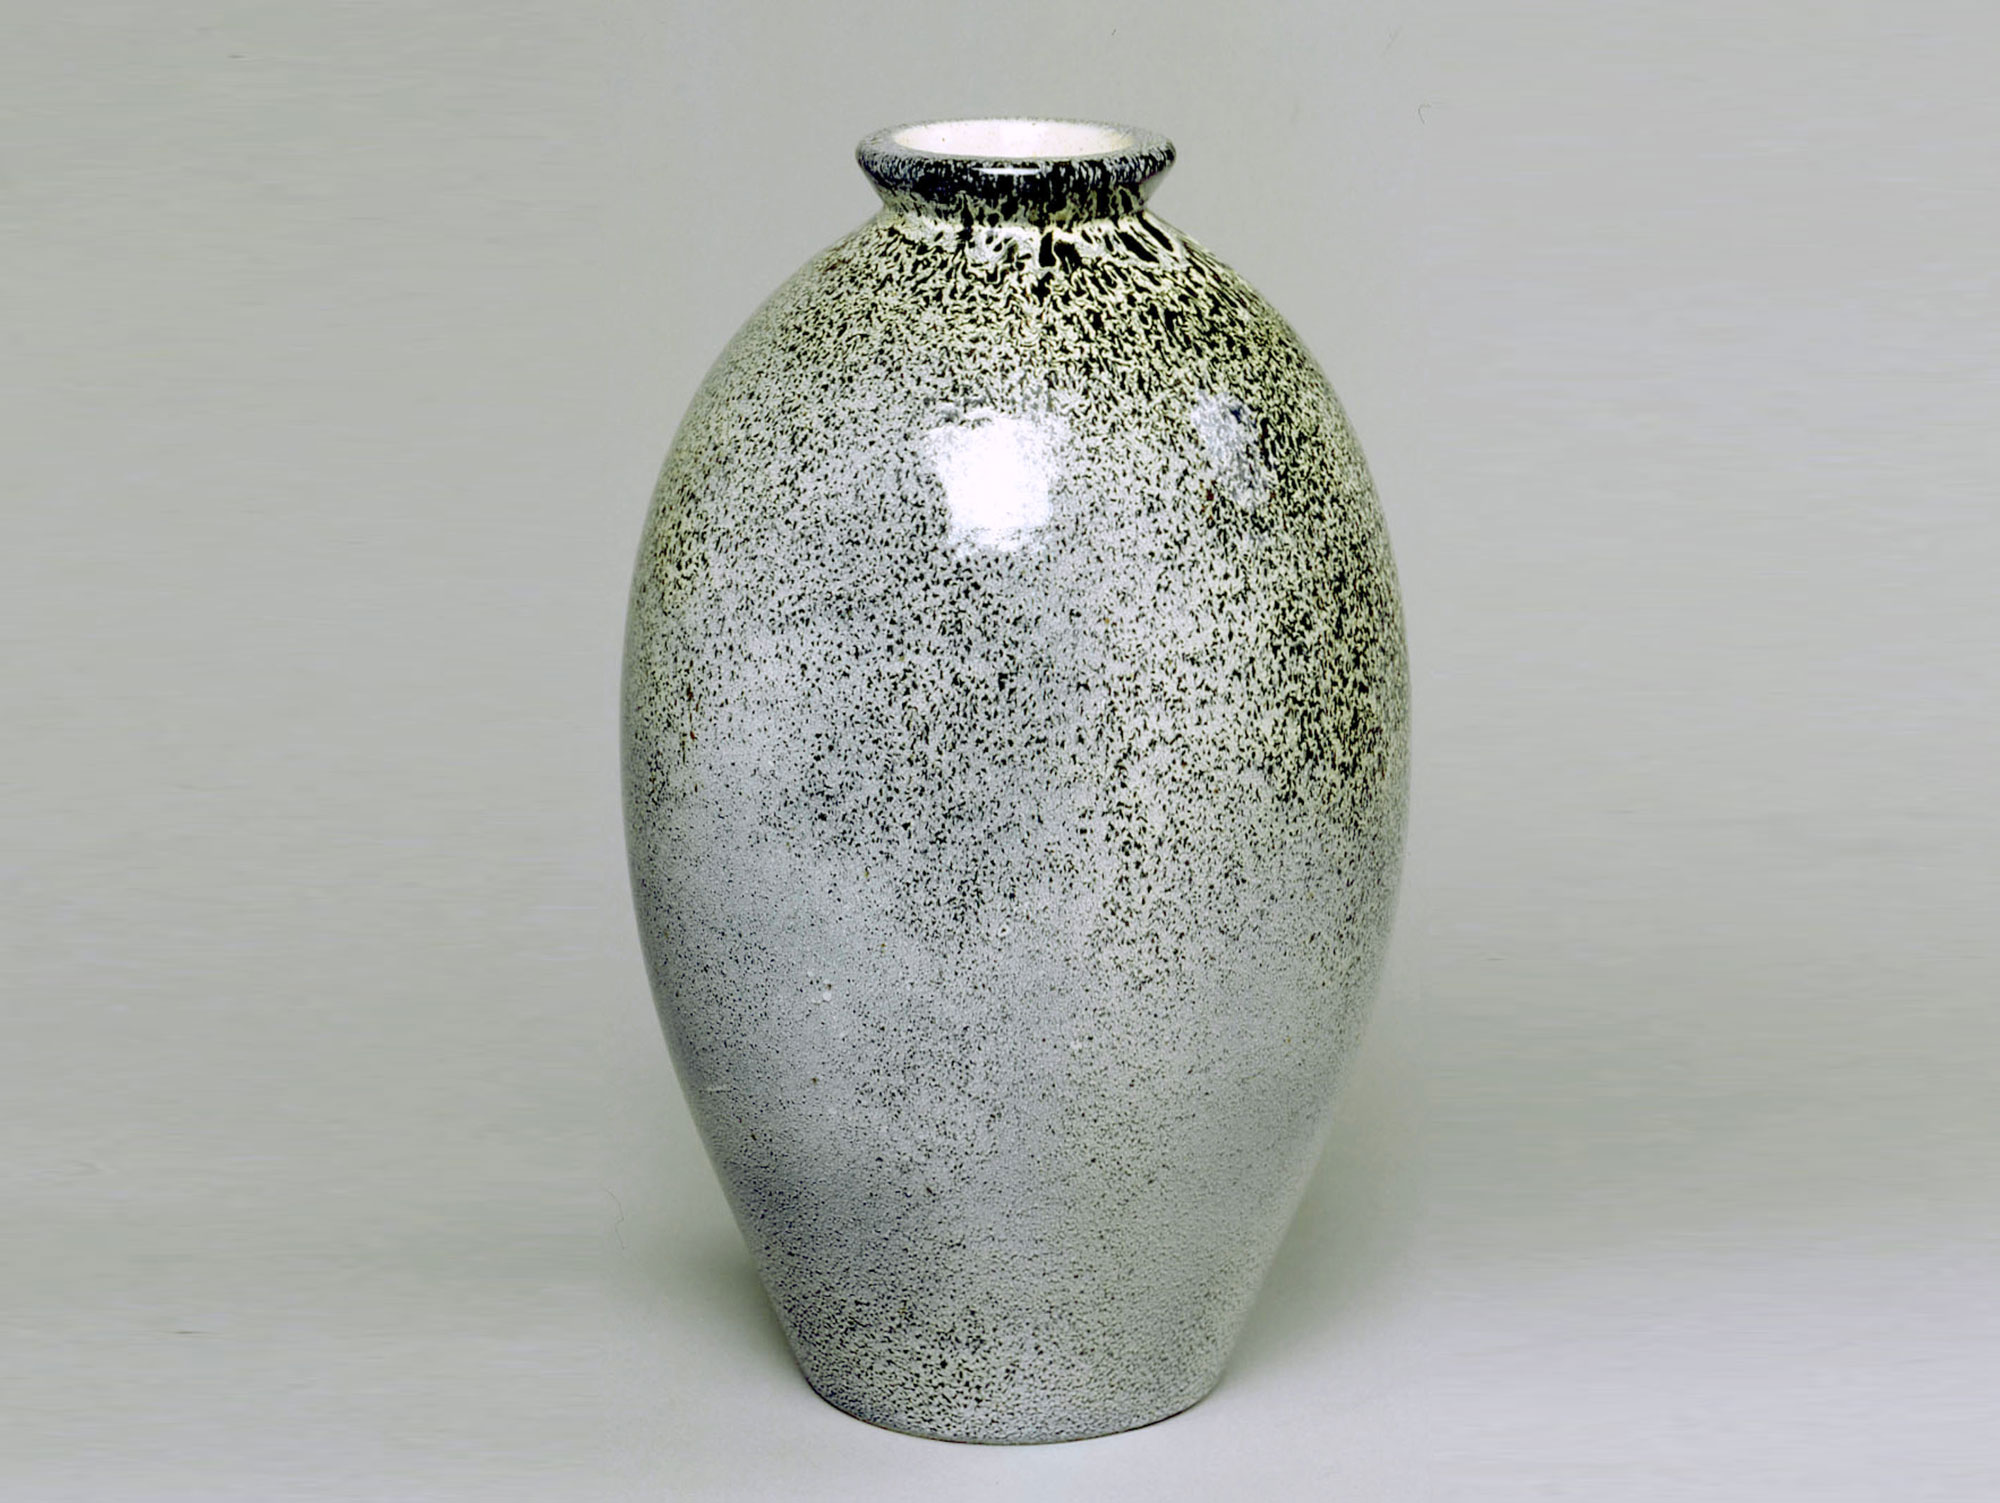 ROBERT LALLEMANT - Vase, vers 1927